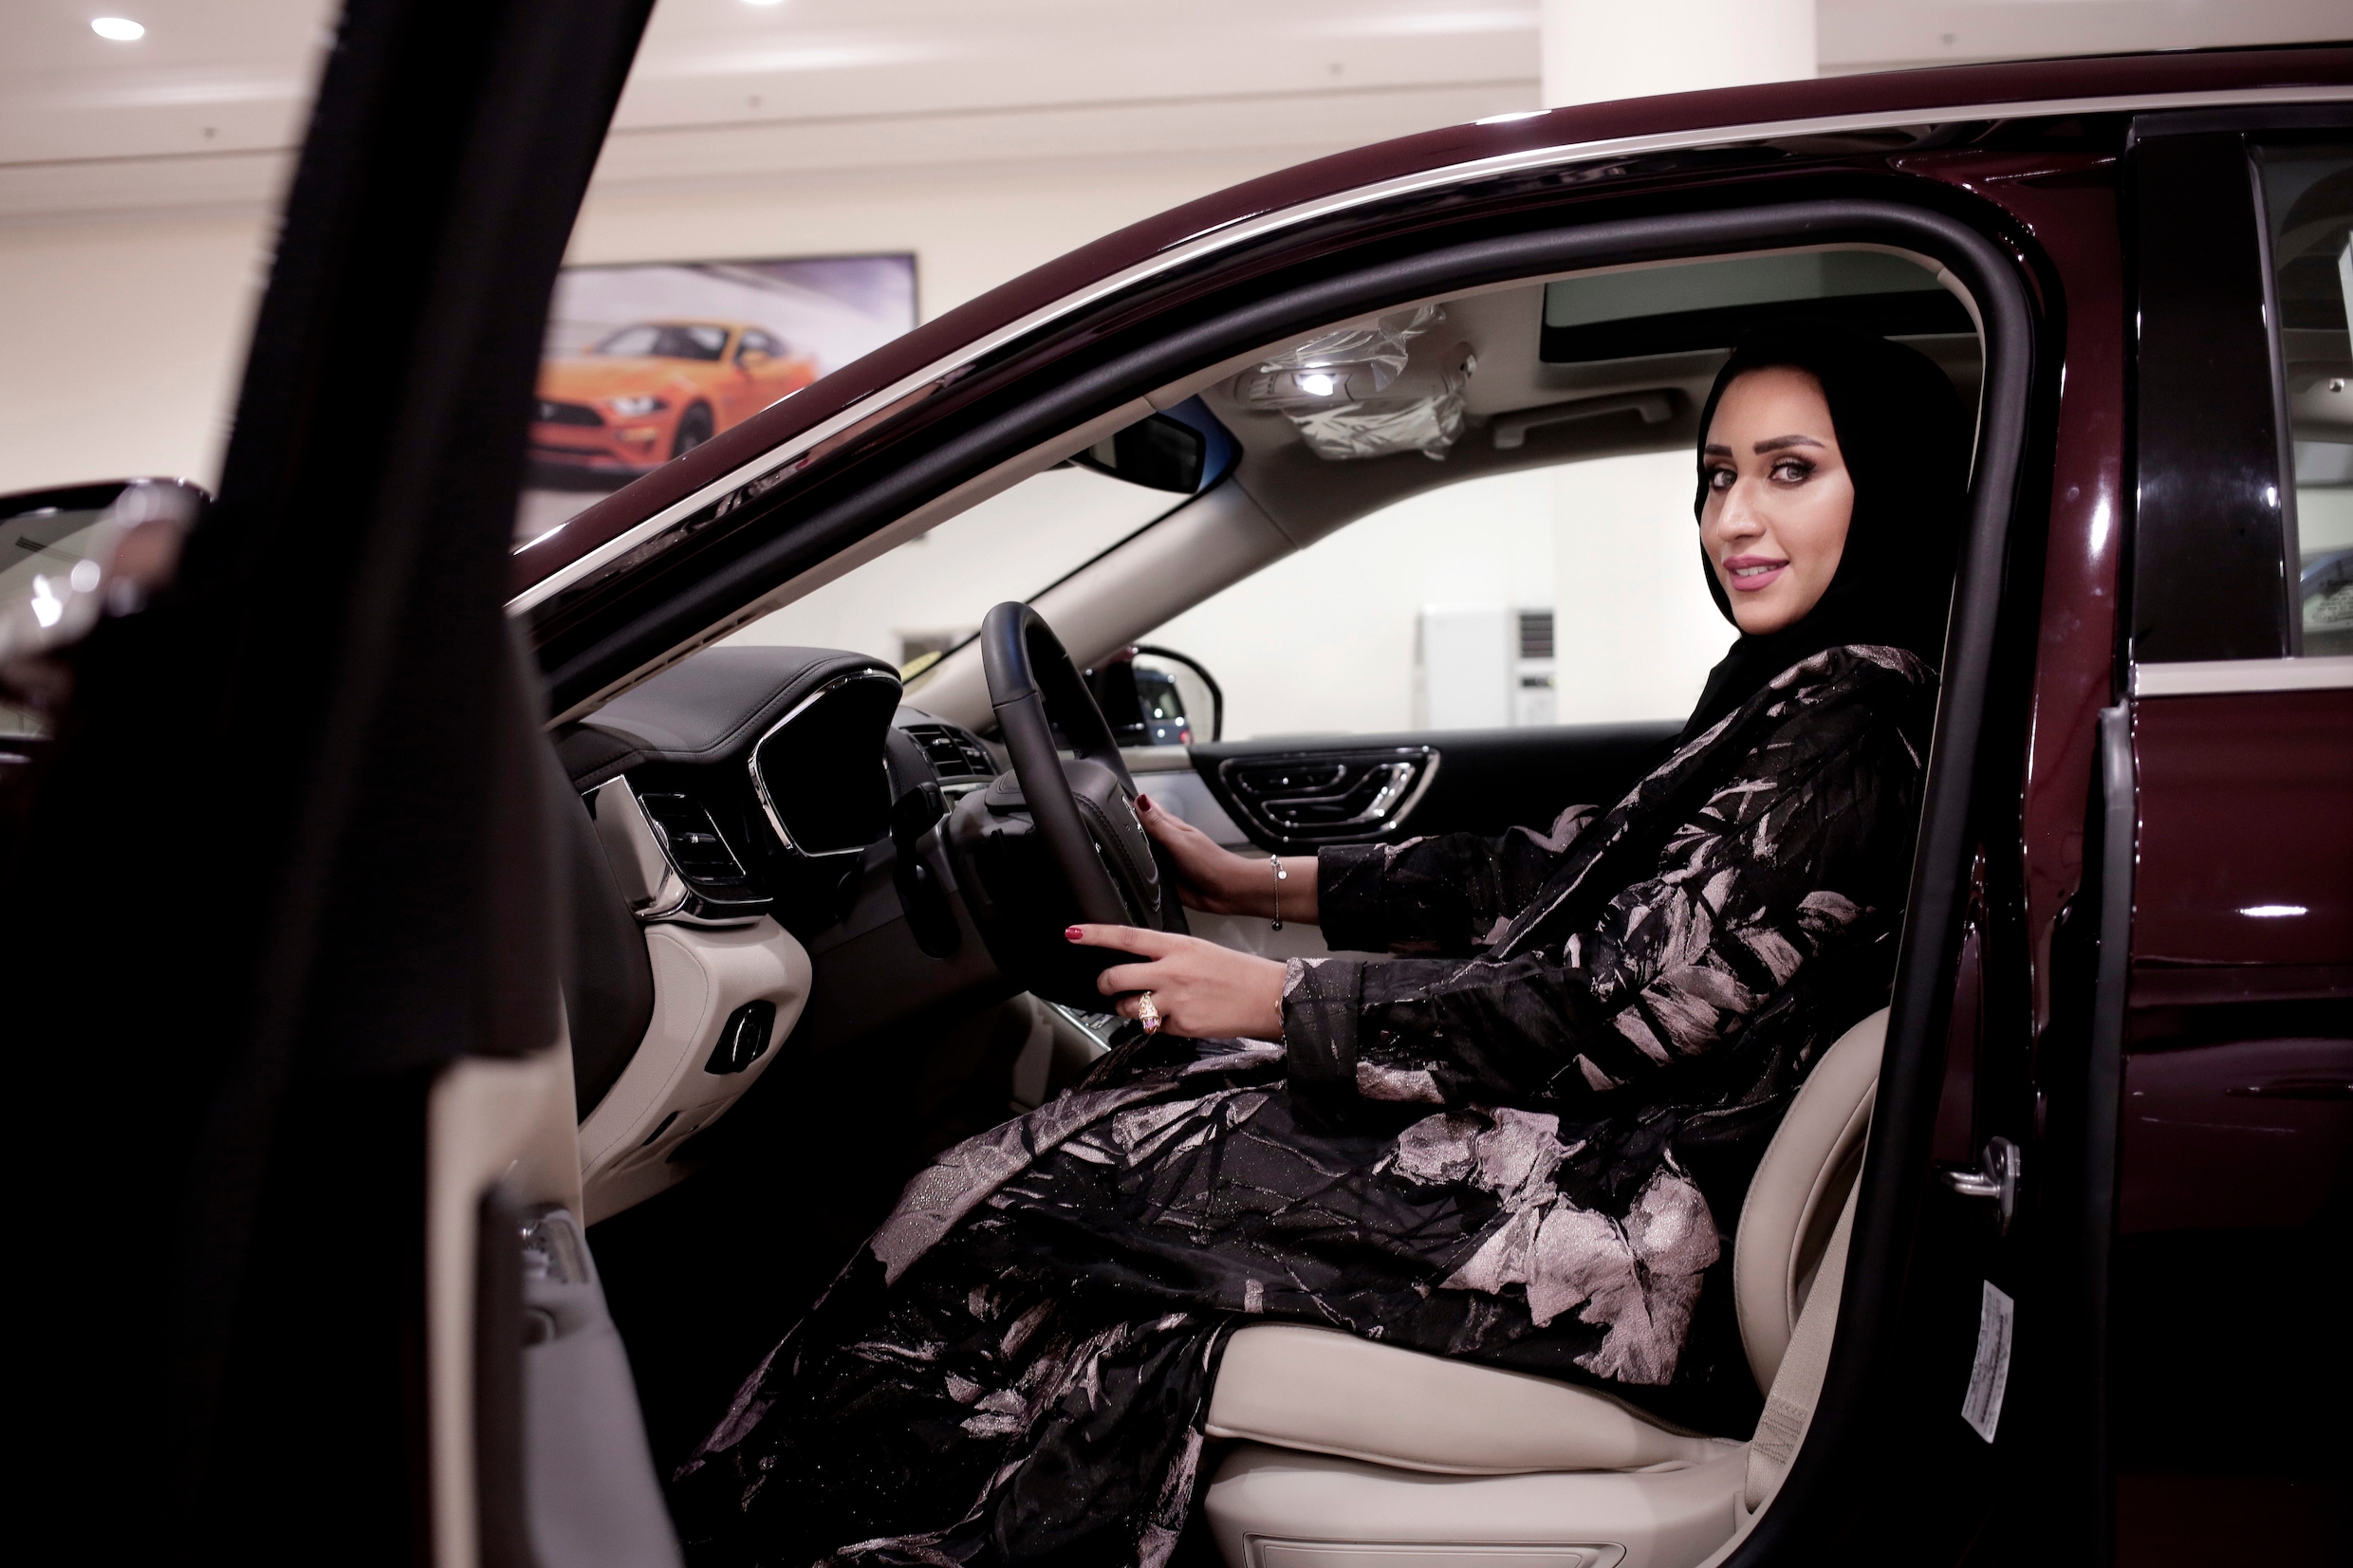 Saudische vrouwen mogen weer rijden, maar daar zitten wel wat haken en ogen aan